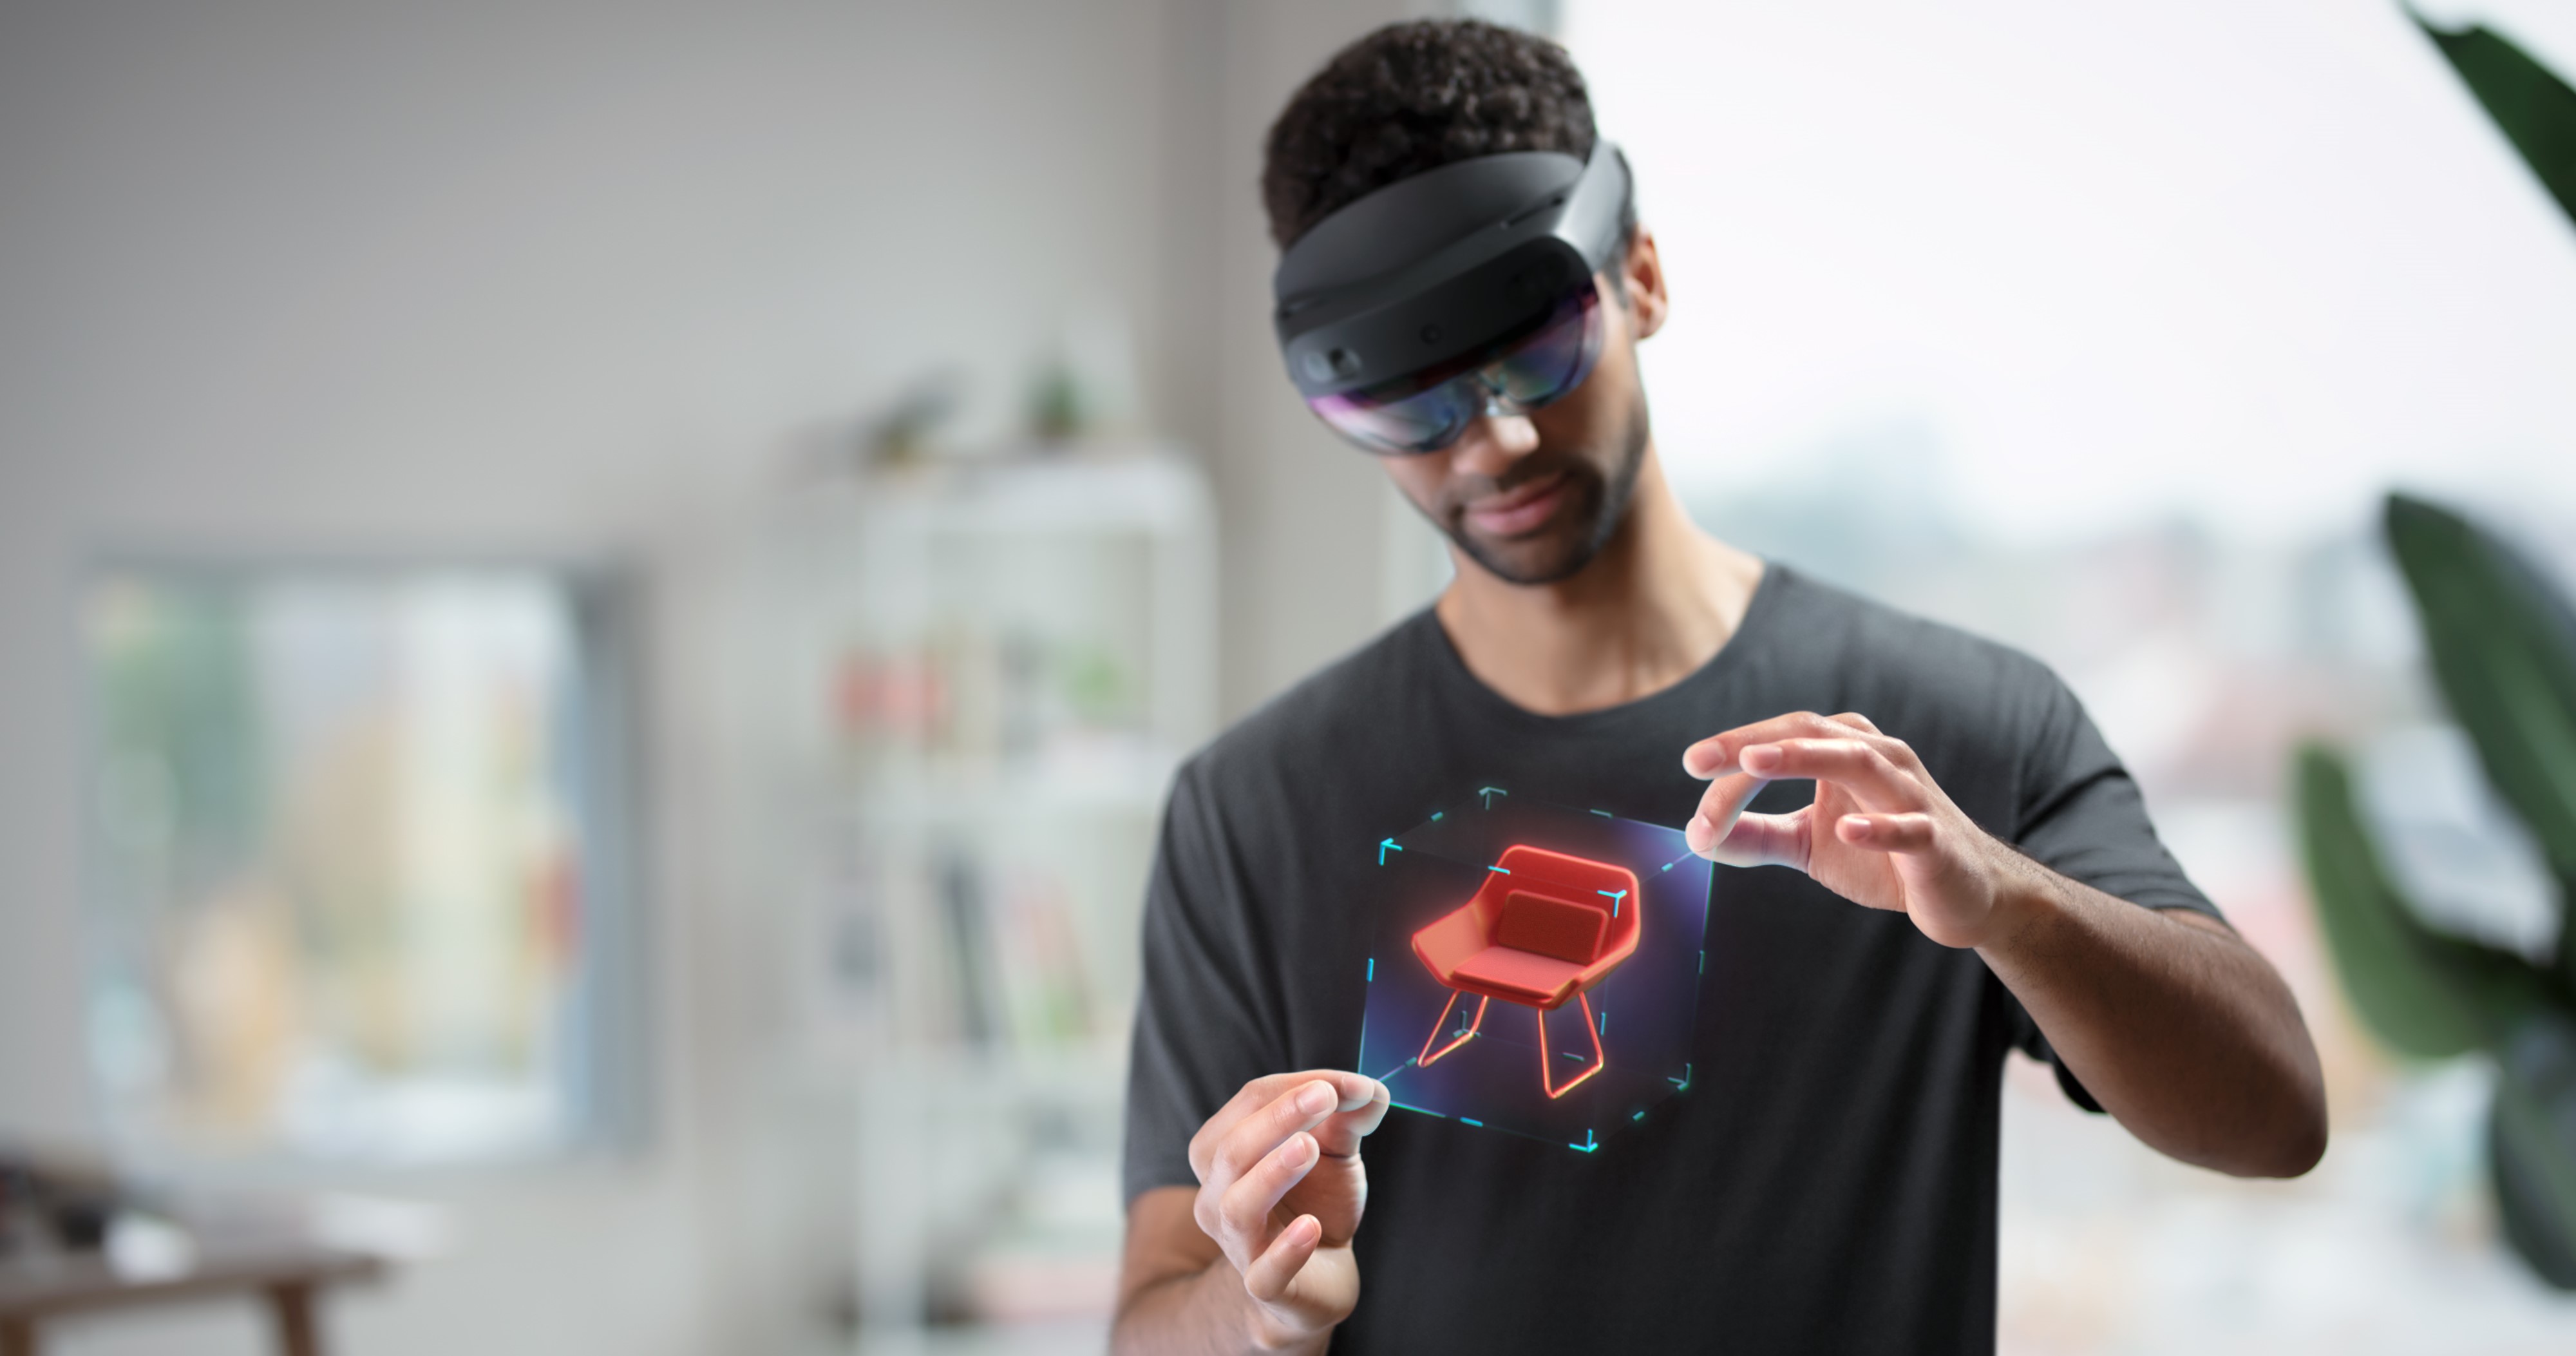 使用者配戴並手動操作 HoloLens 的圖片